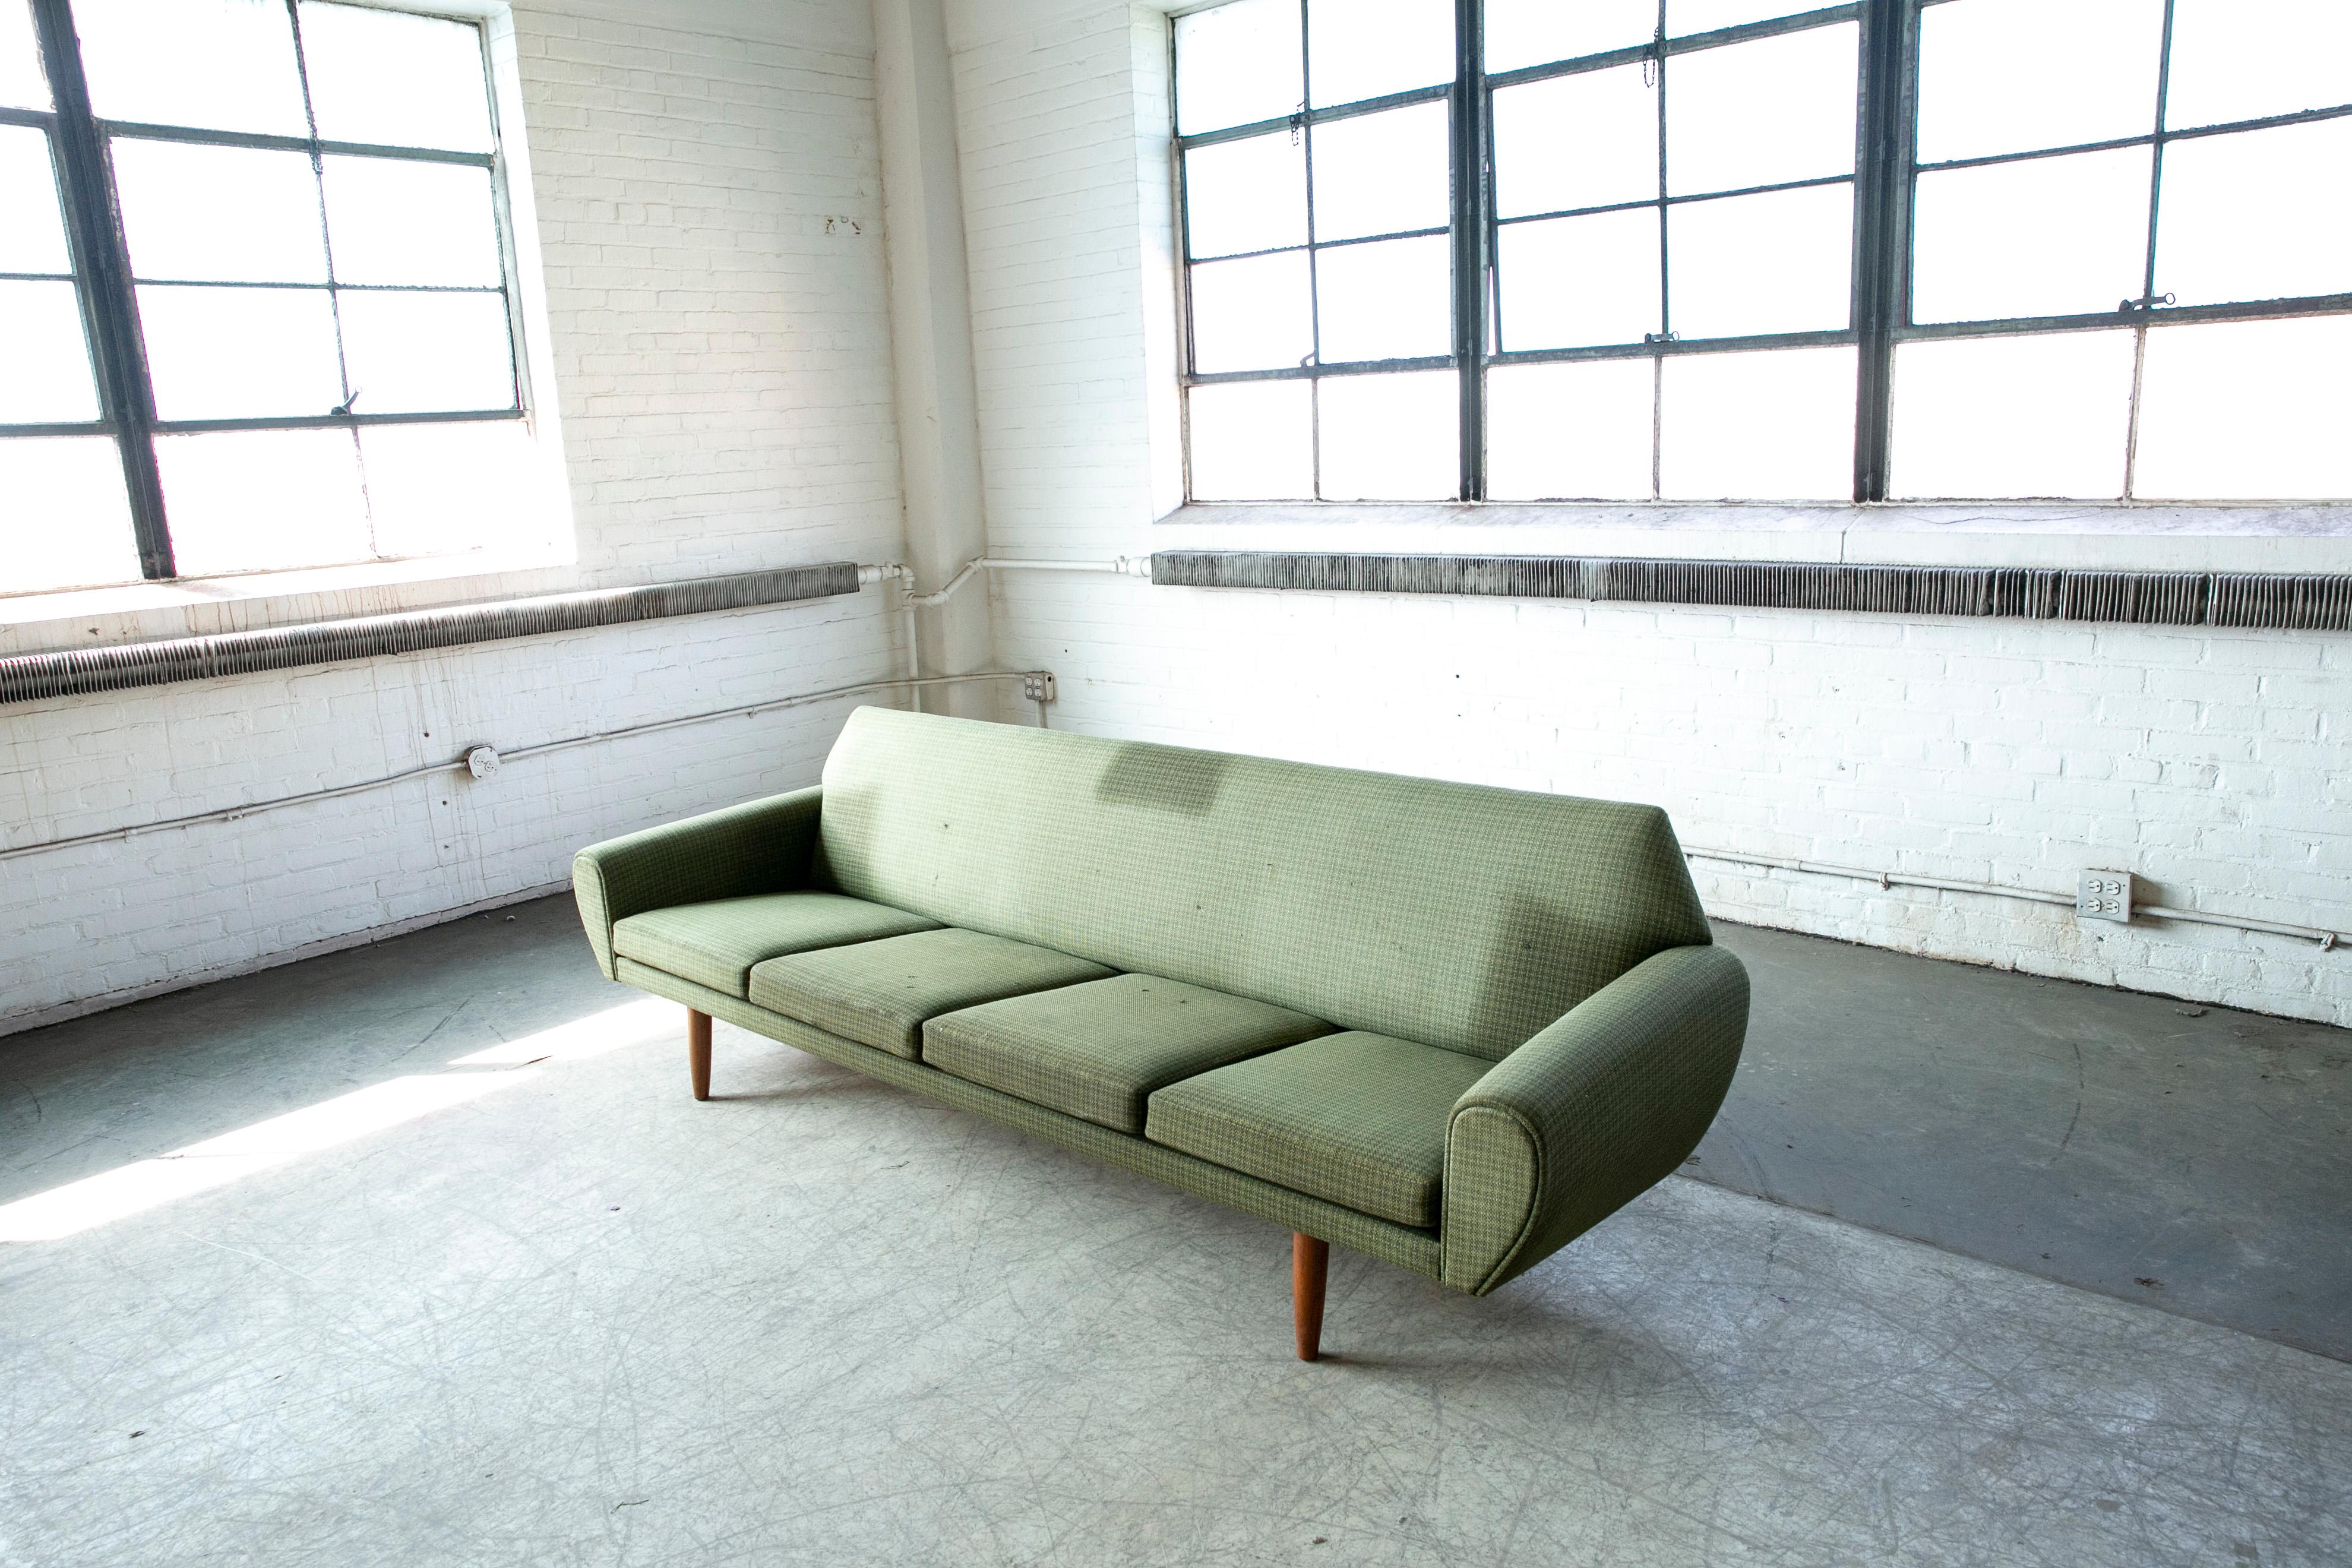 Erstaunlich Sofa schlanken organischen Design-Linien und nur der Inbegriff der besten der dänischen Designer der 1960er Jahre zu bieten hatte. Einige dieser fantastischen Entwürfe waren in vielerlei Hinsicht das letzte Hurra auf die dänische